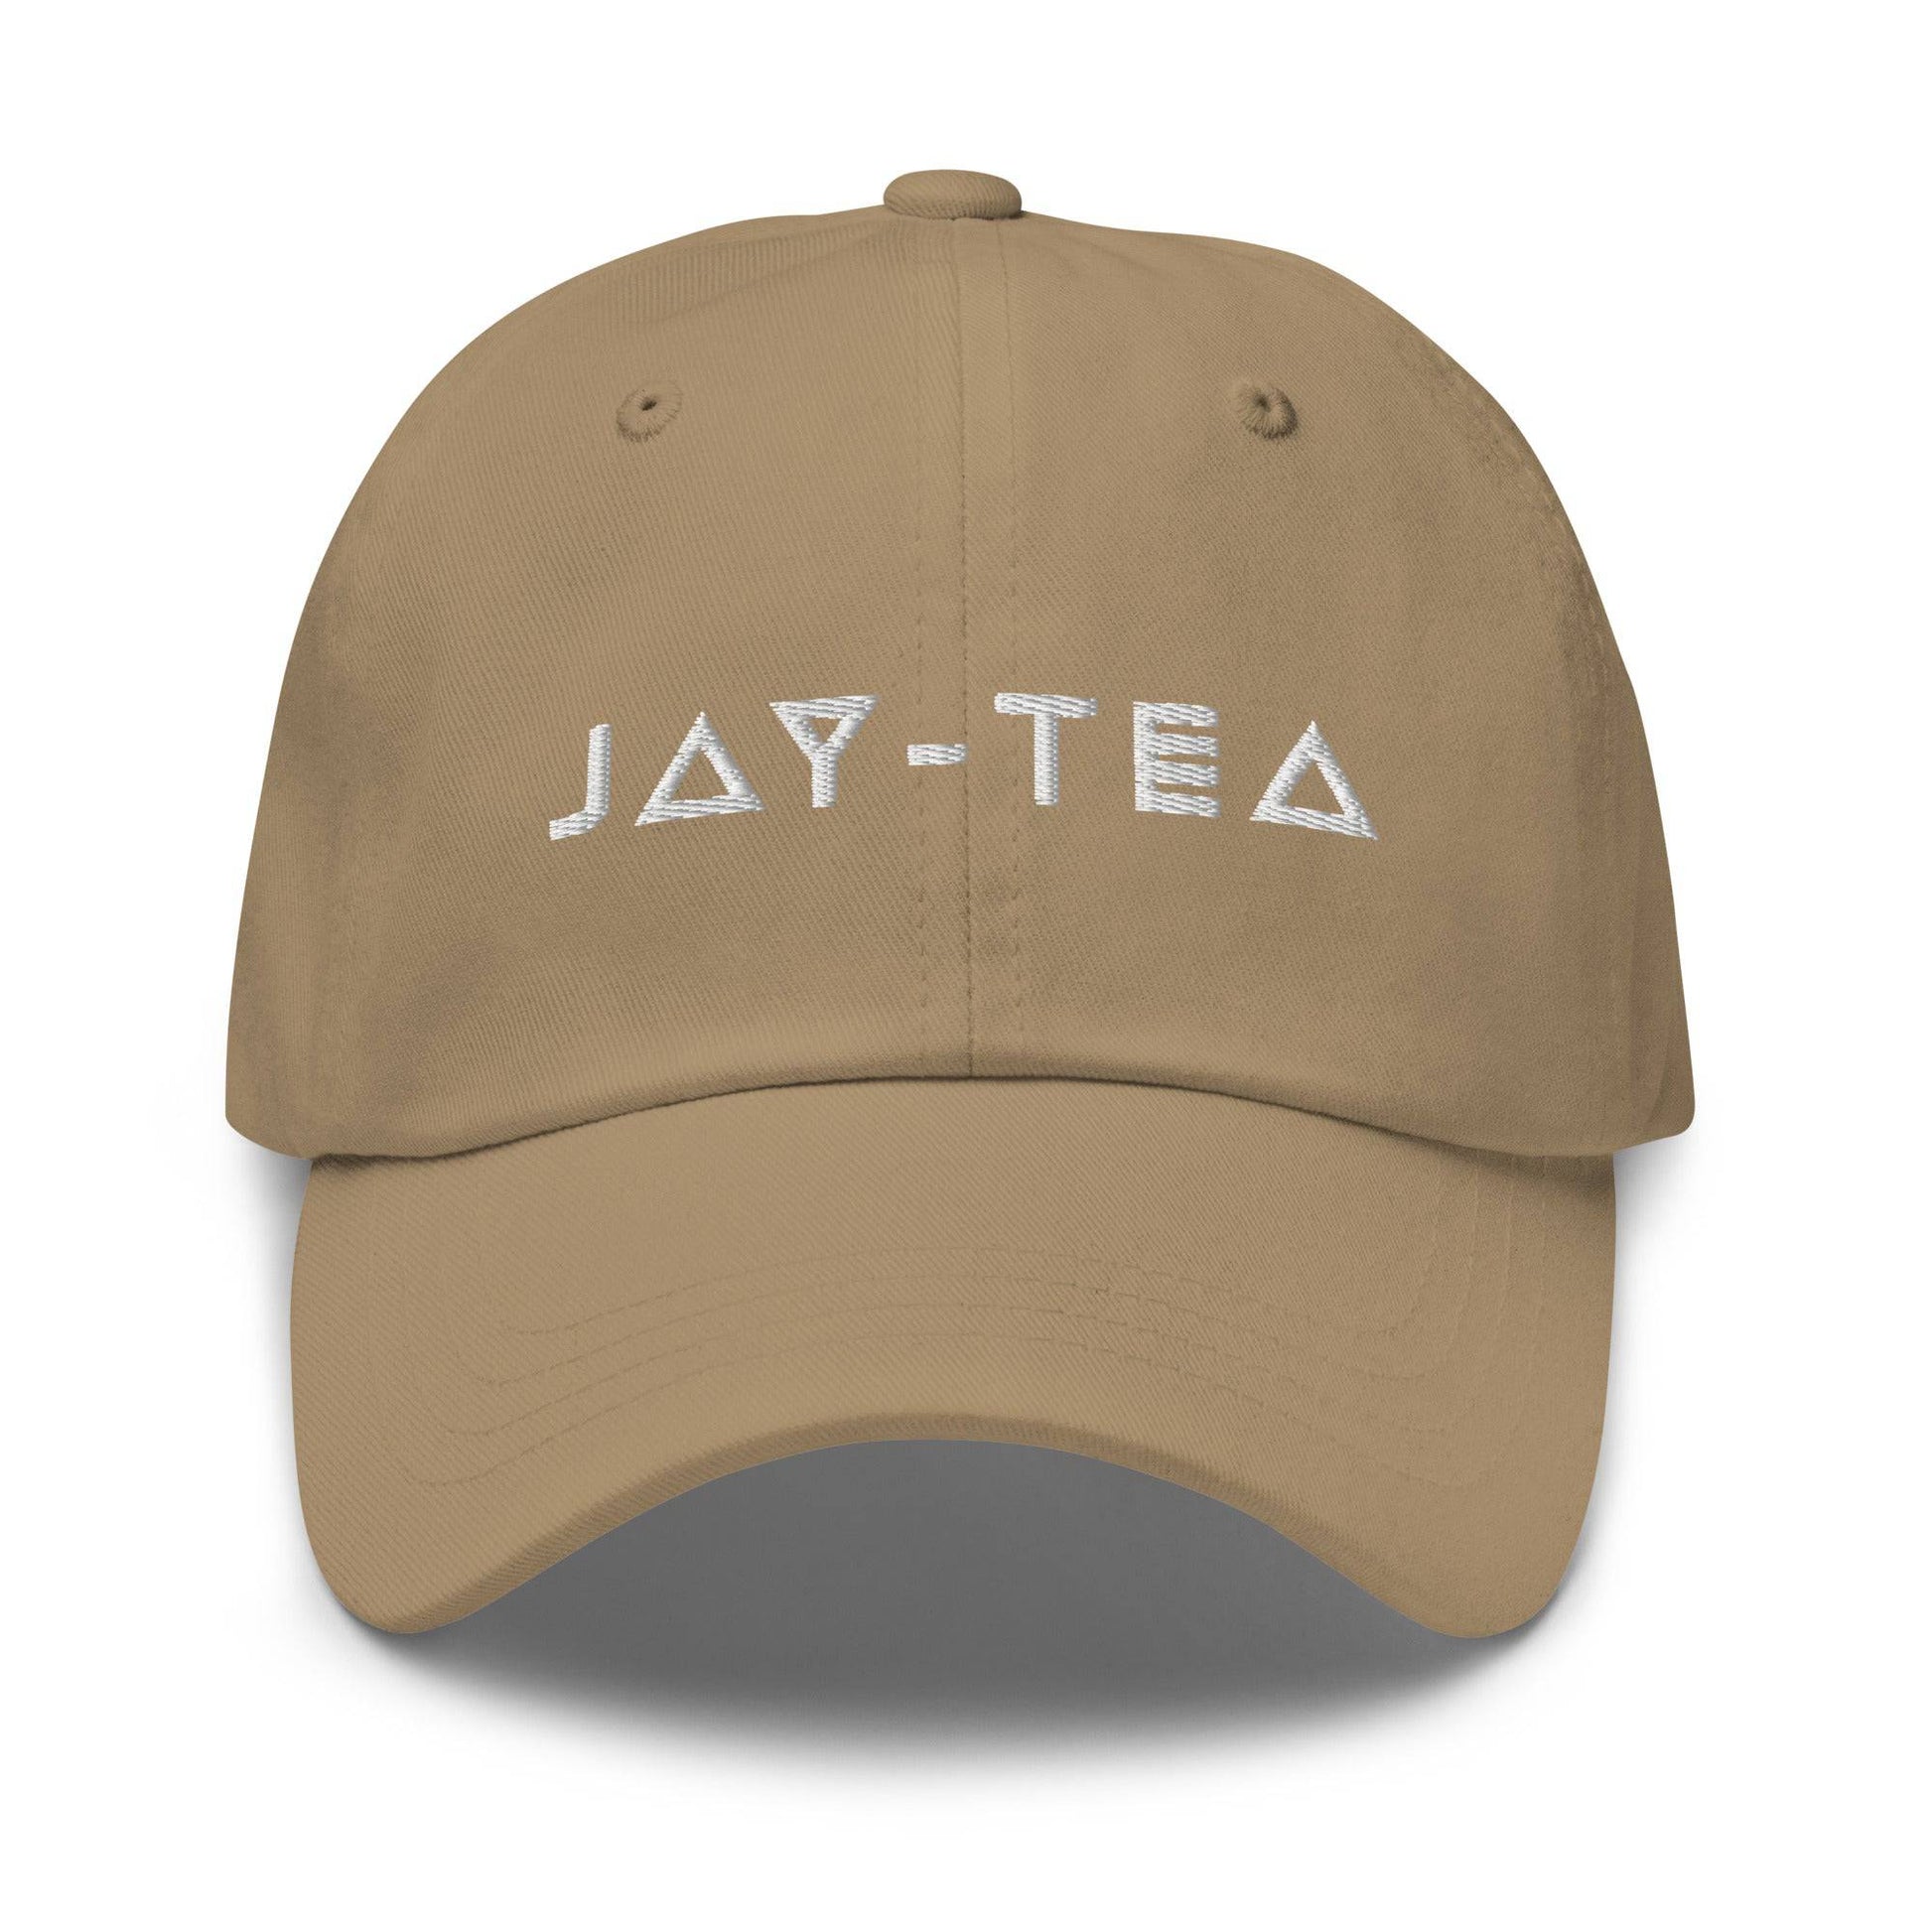 Cap | Jay-Tea Originals - Jay-Tea - Jay-Tea